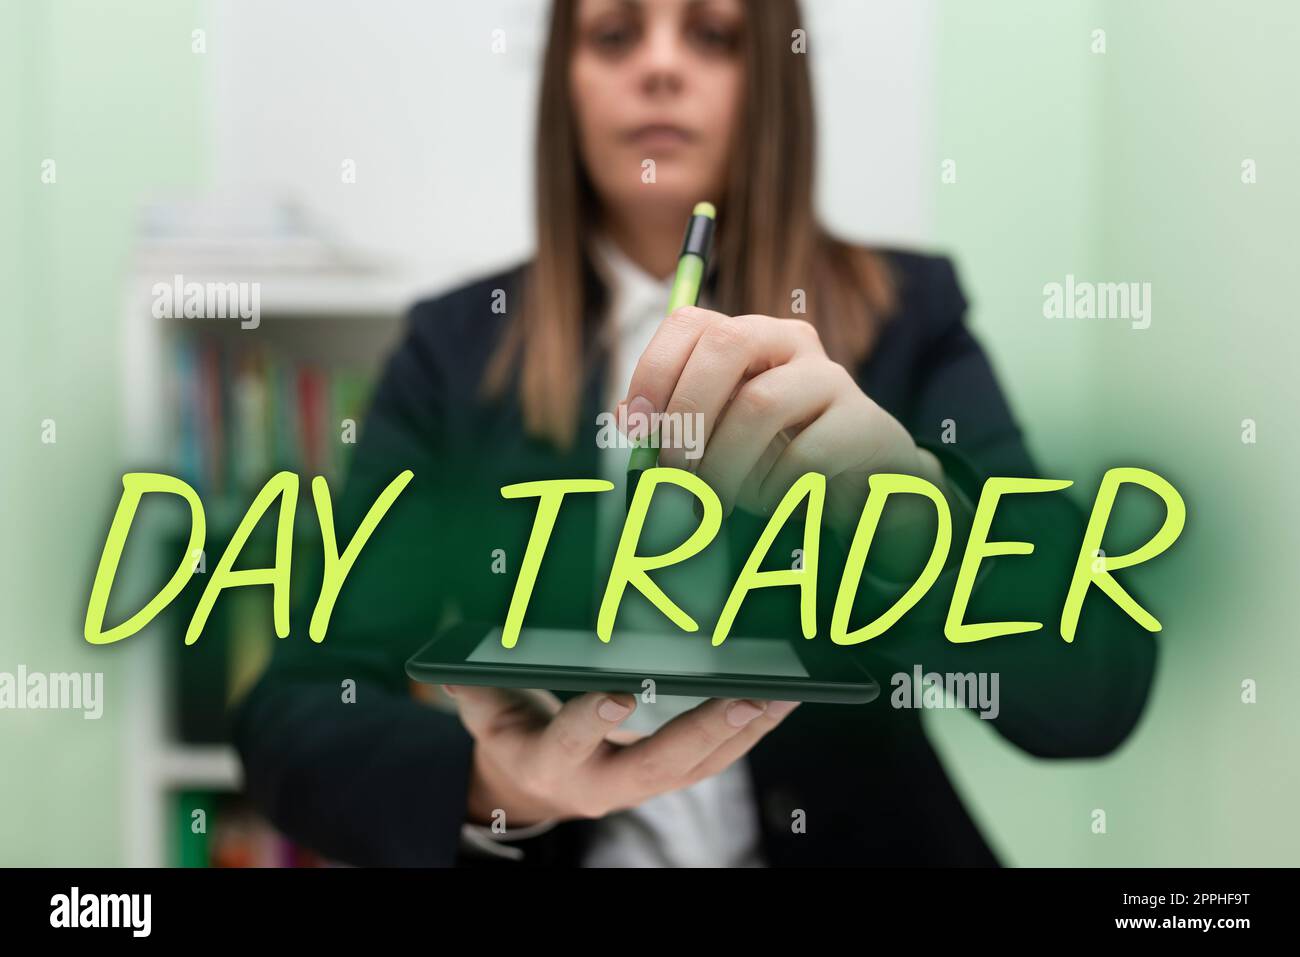 Konzeptionelle Bildunterschrift Day Trader. Geschäftsübersicht Eine Person, die Finanzinstrumente innerhalb eines Tages kauft und verkauft Stockfoto